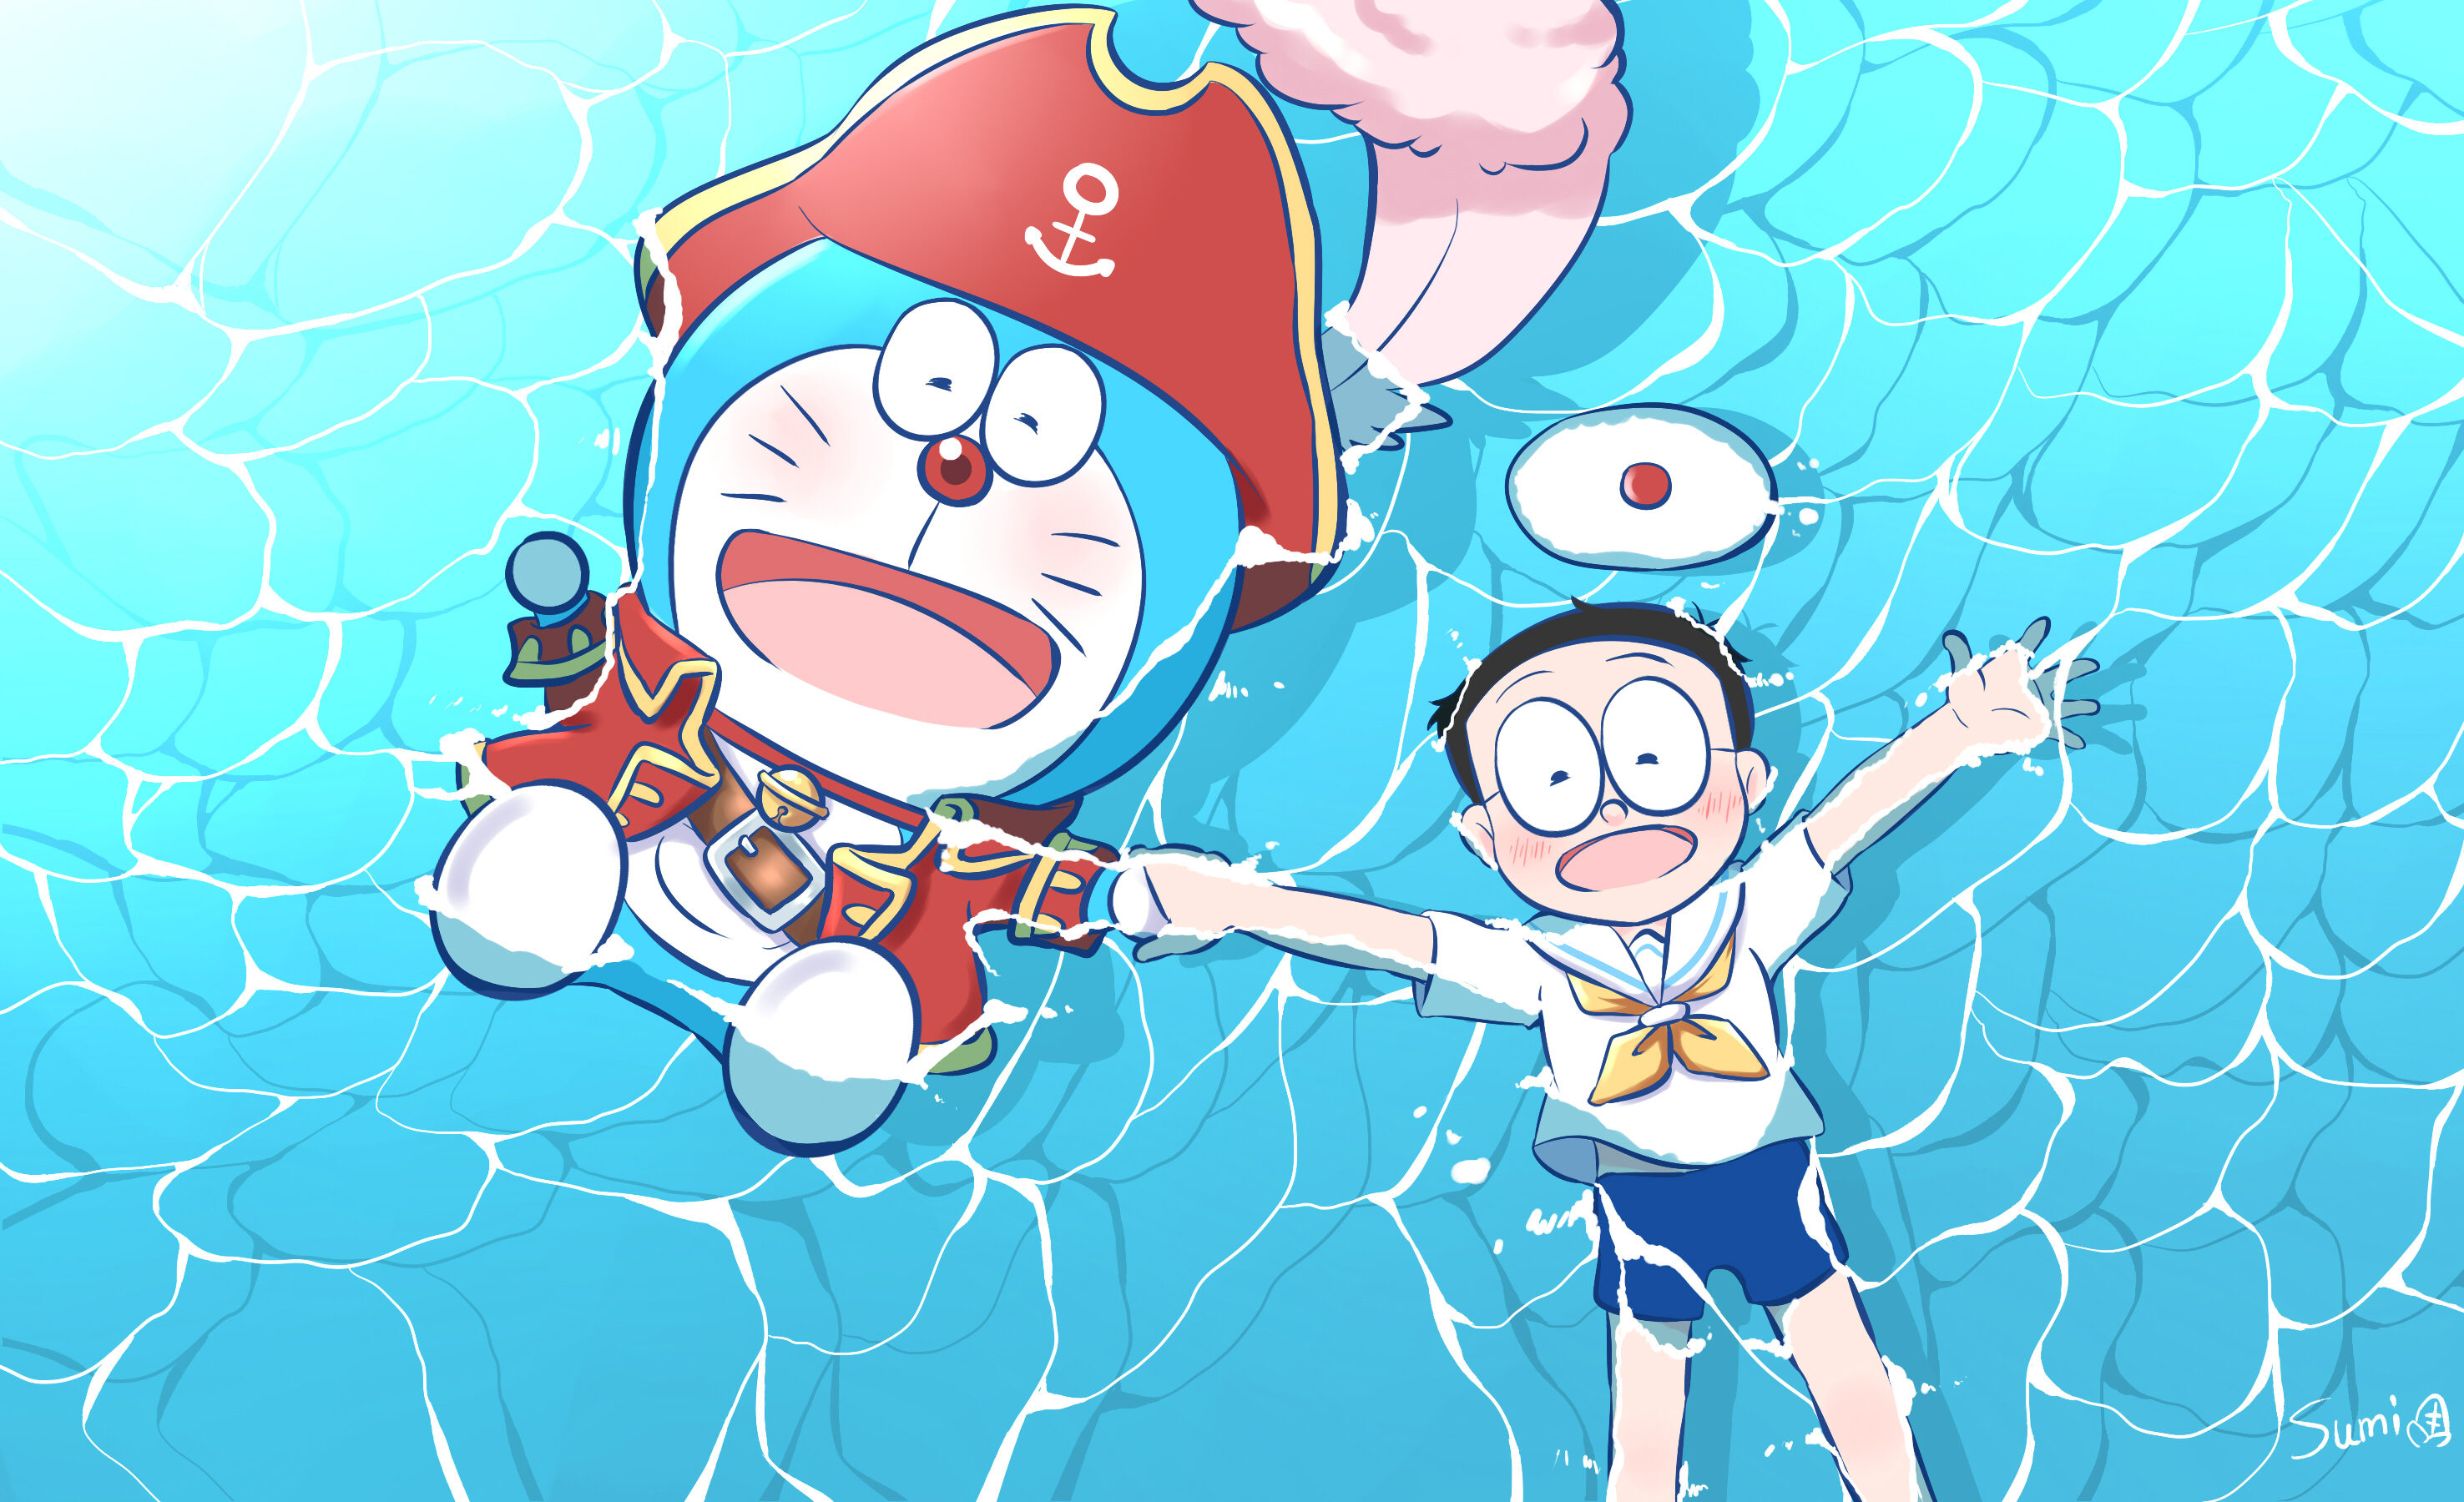 Anime Doraemon HD Wallpaper